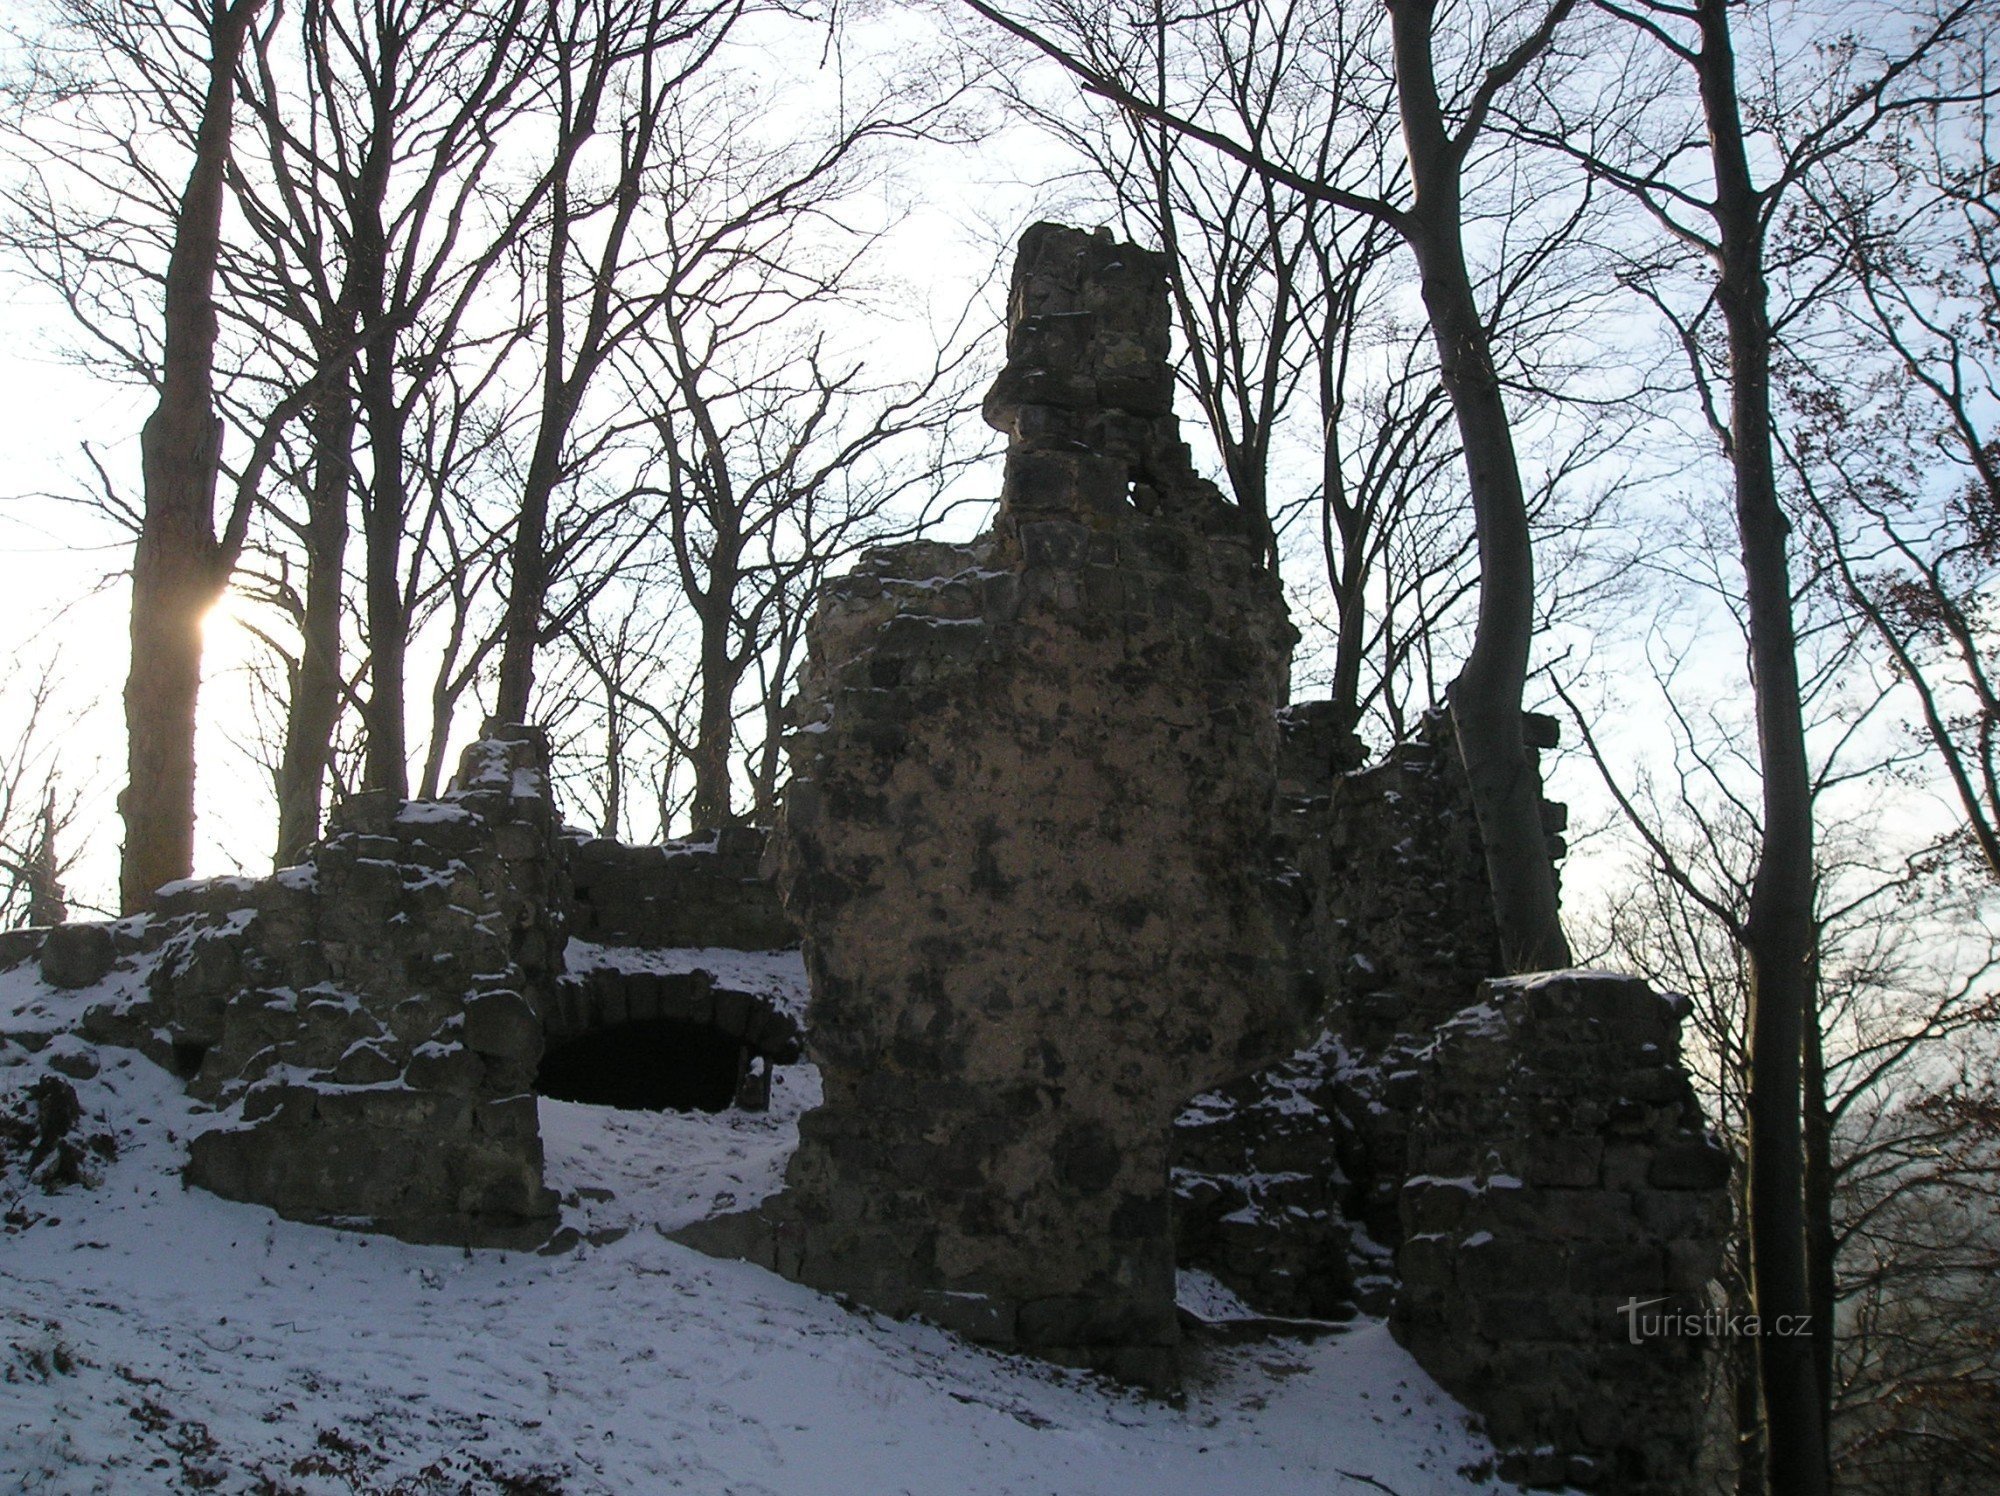 Resti del castello di Děvín